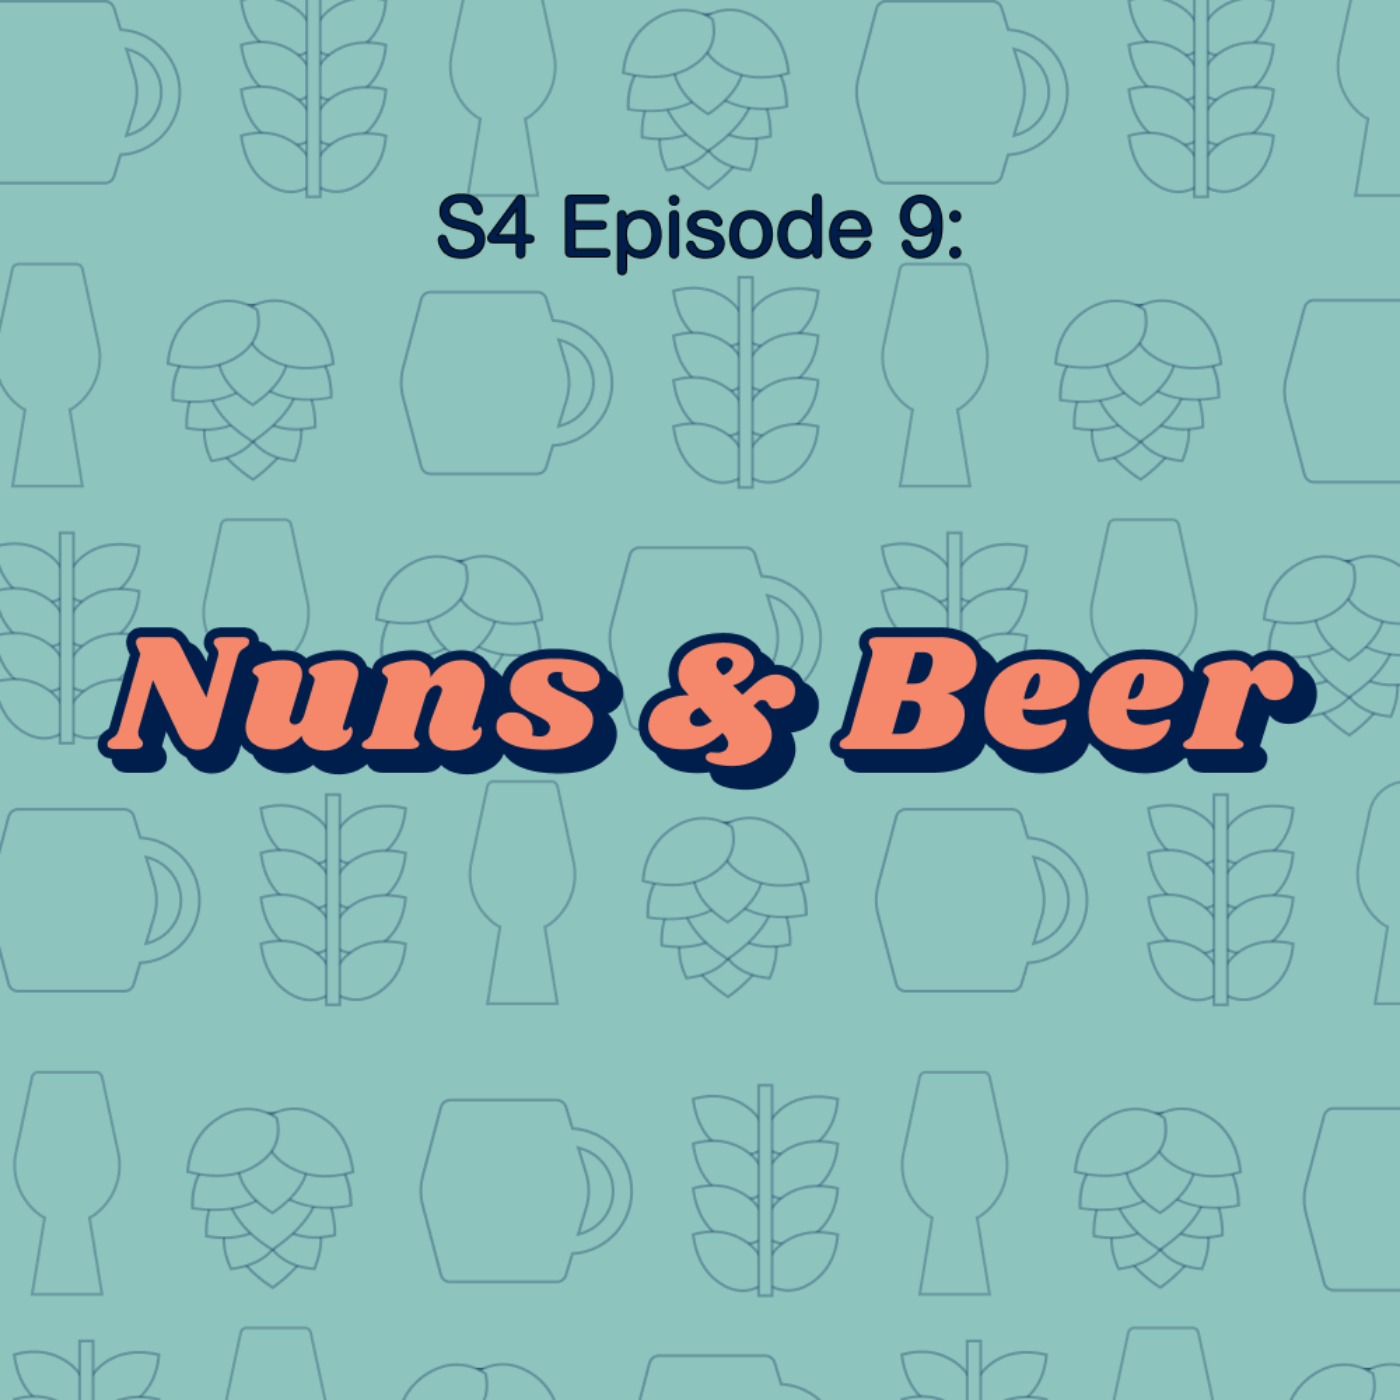 Nuns & Beer